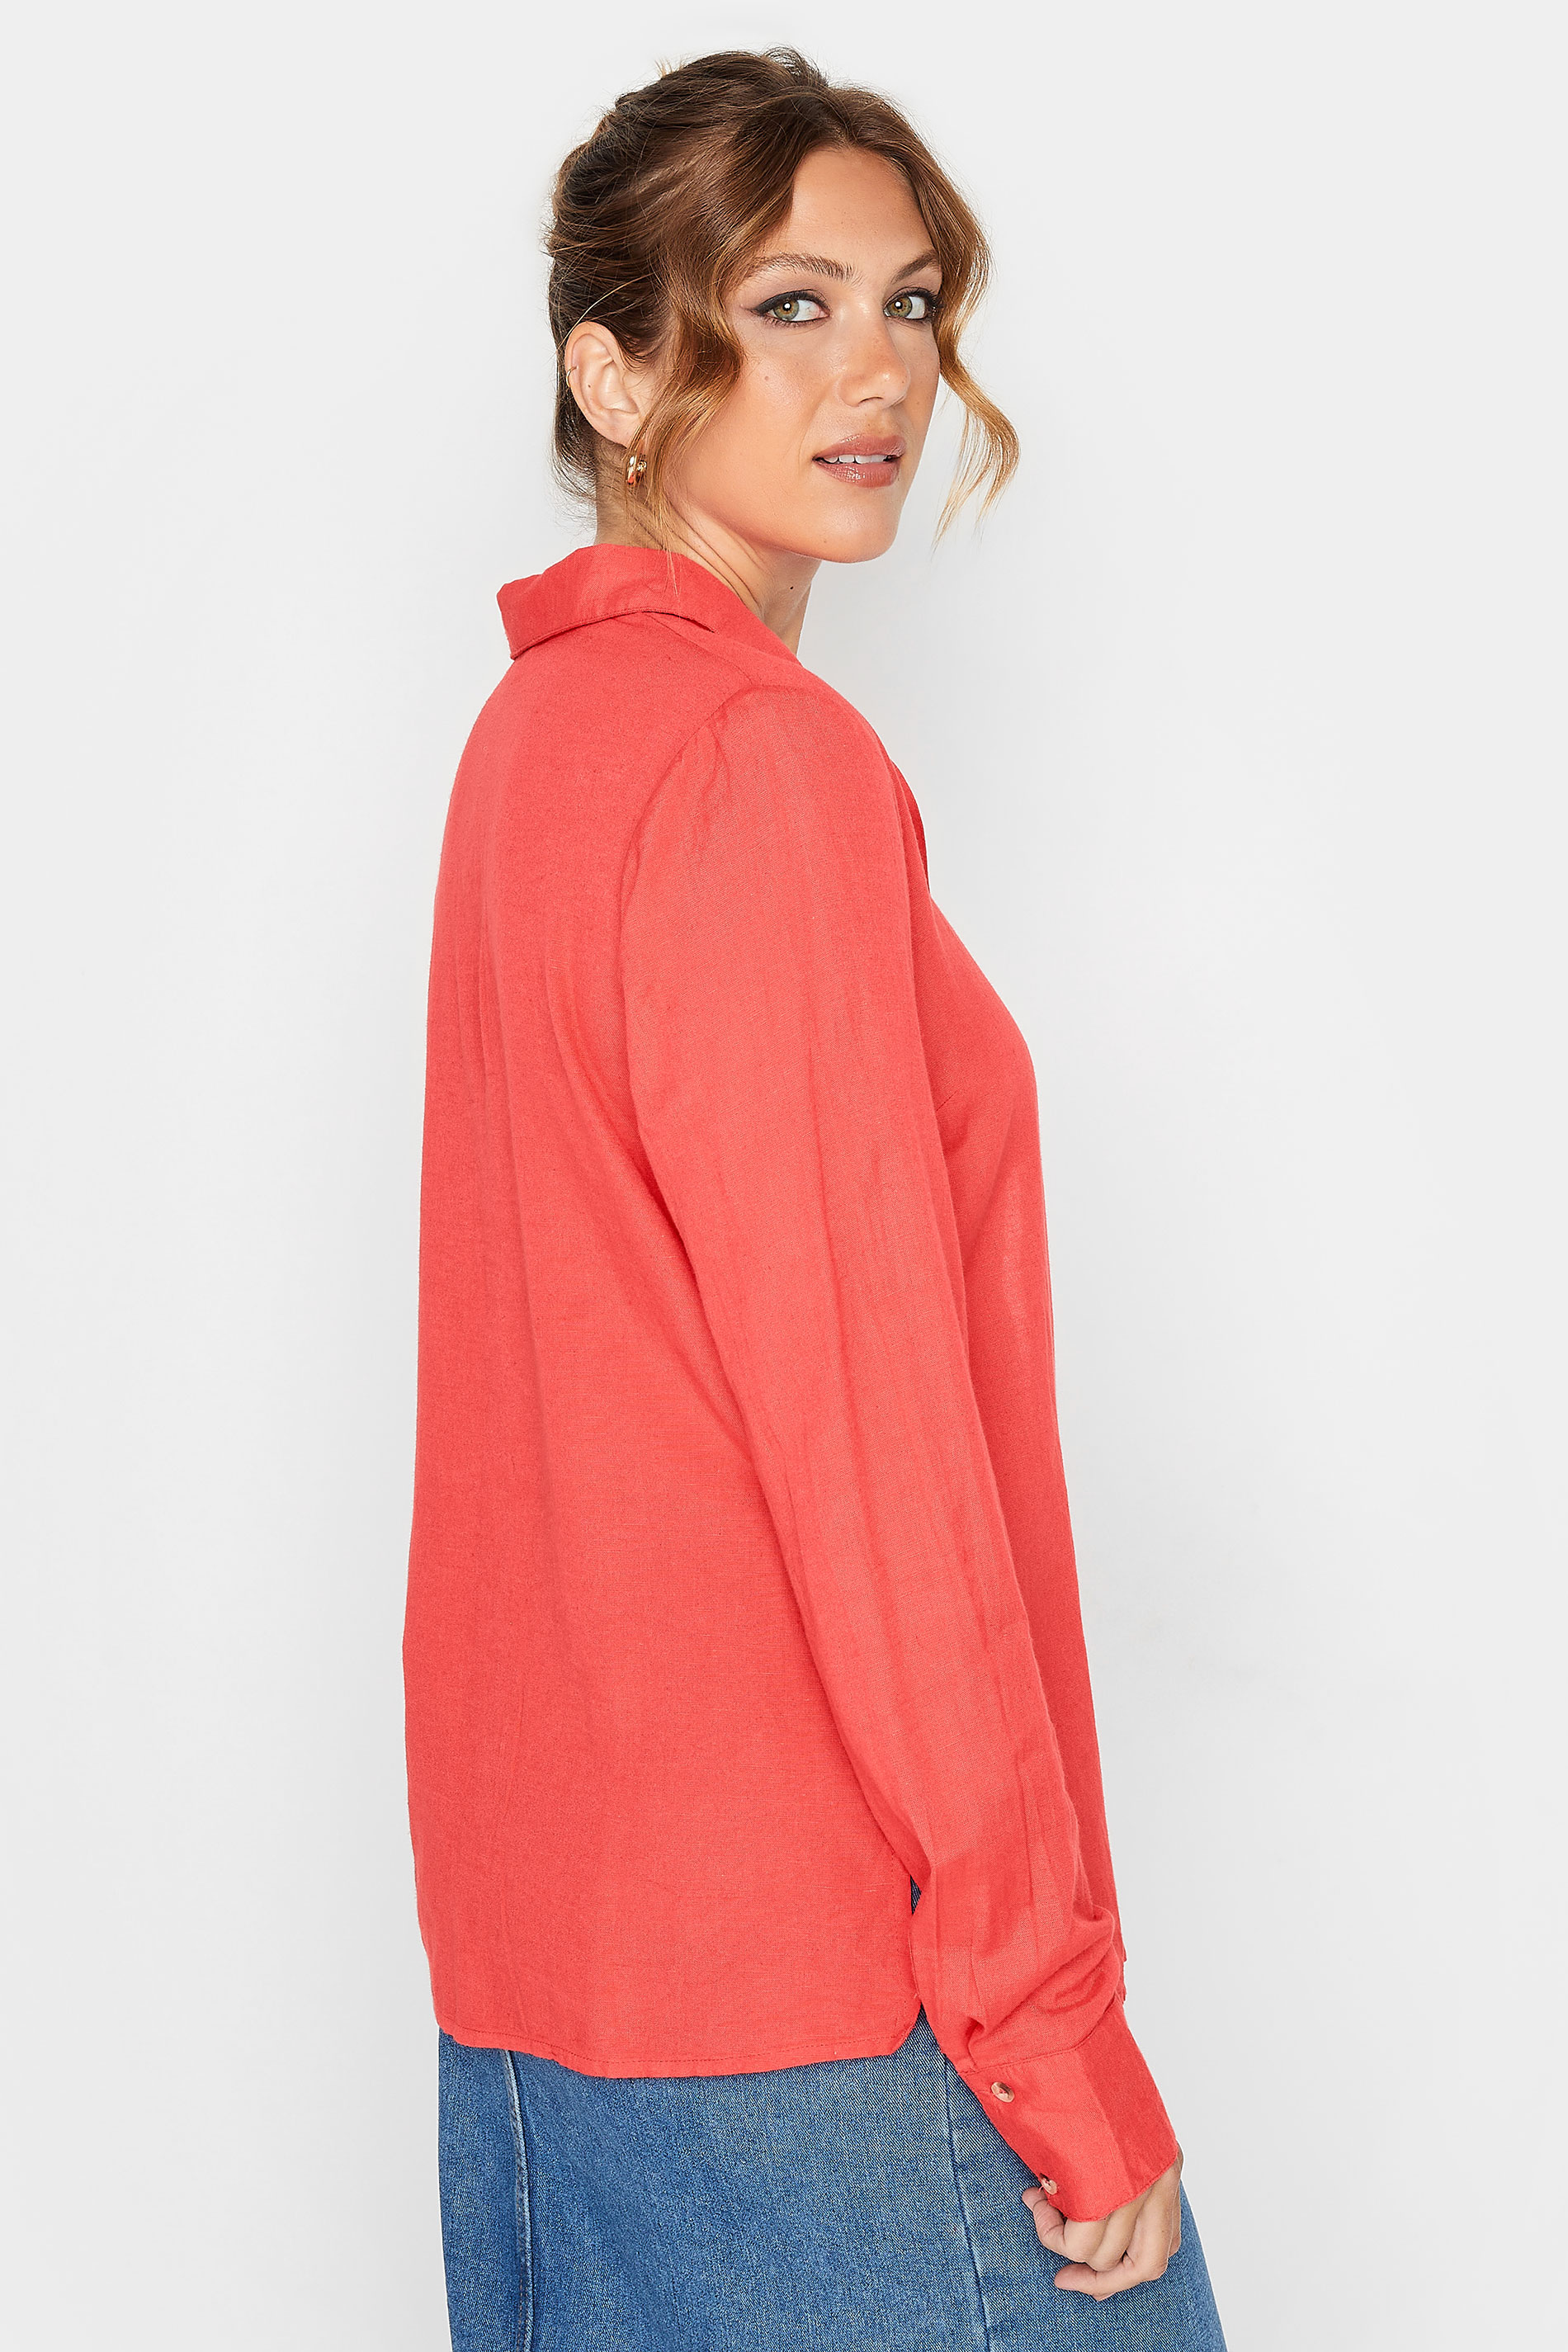 LTS Tall Coral Orange Long Sleeve Linen Blend Shirt | Long Tall Sally 3